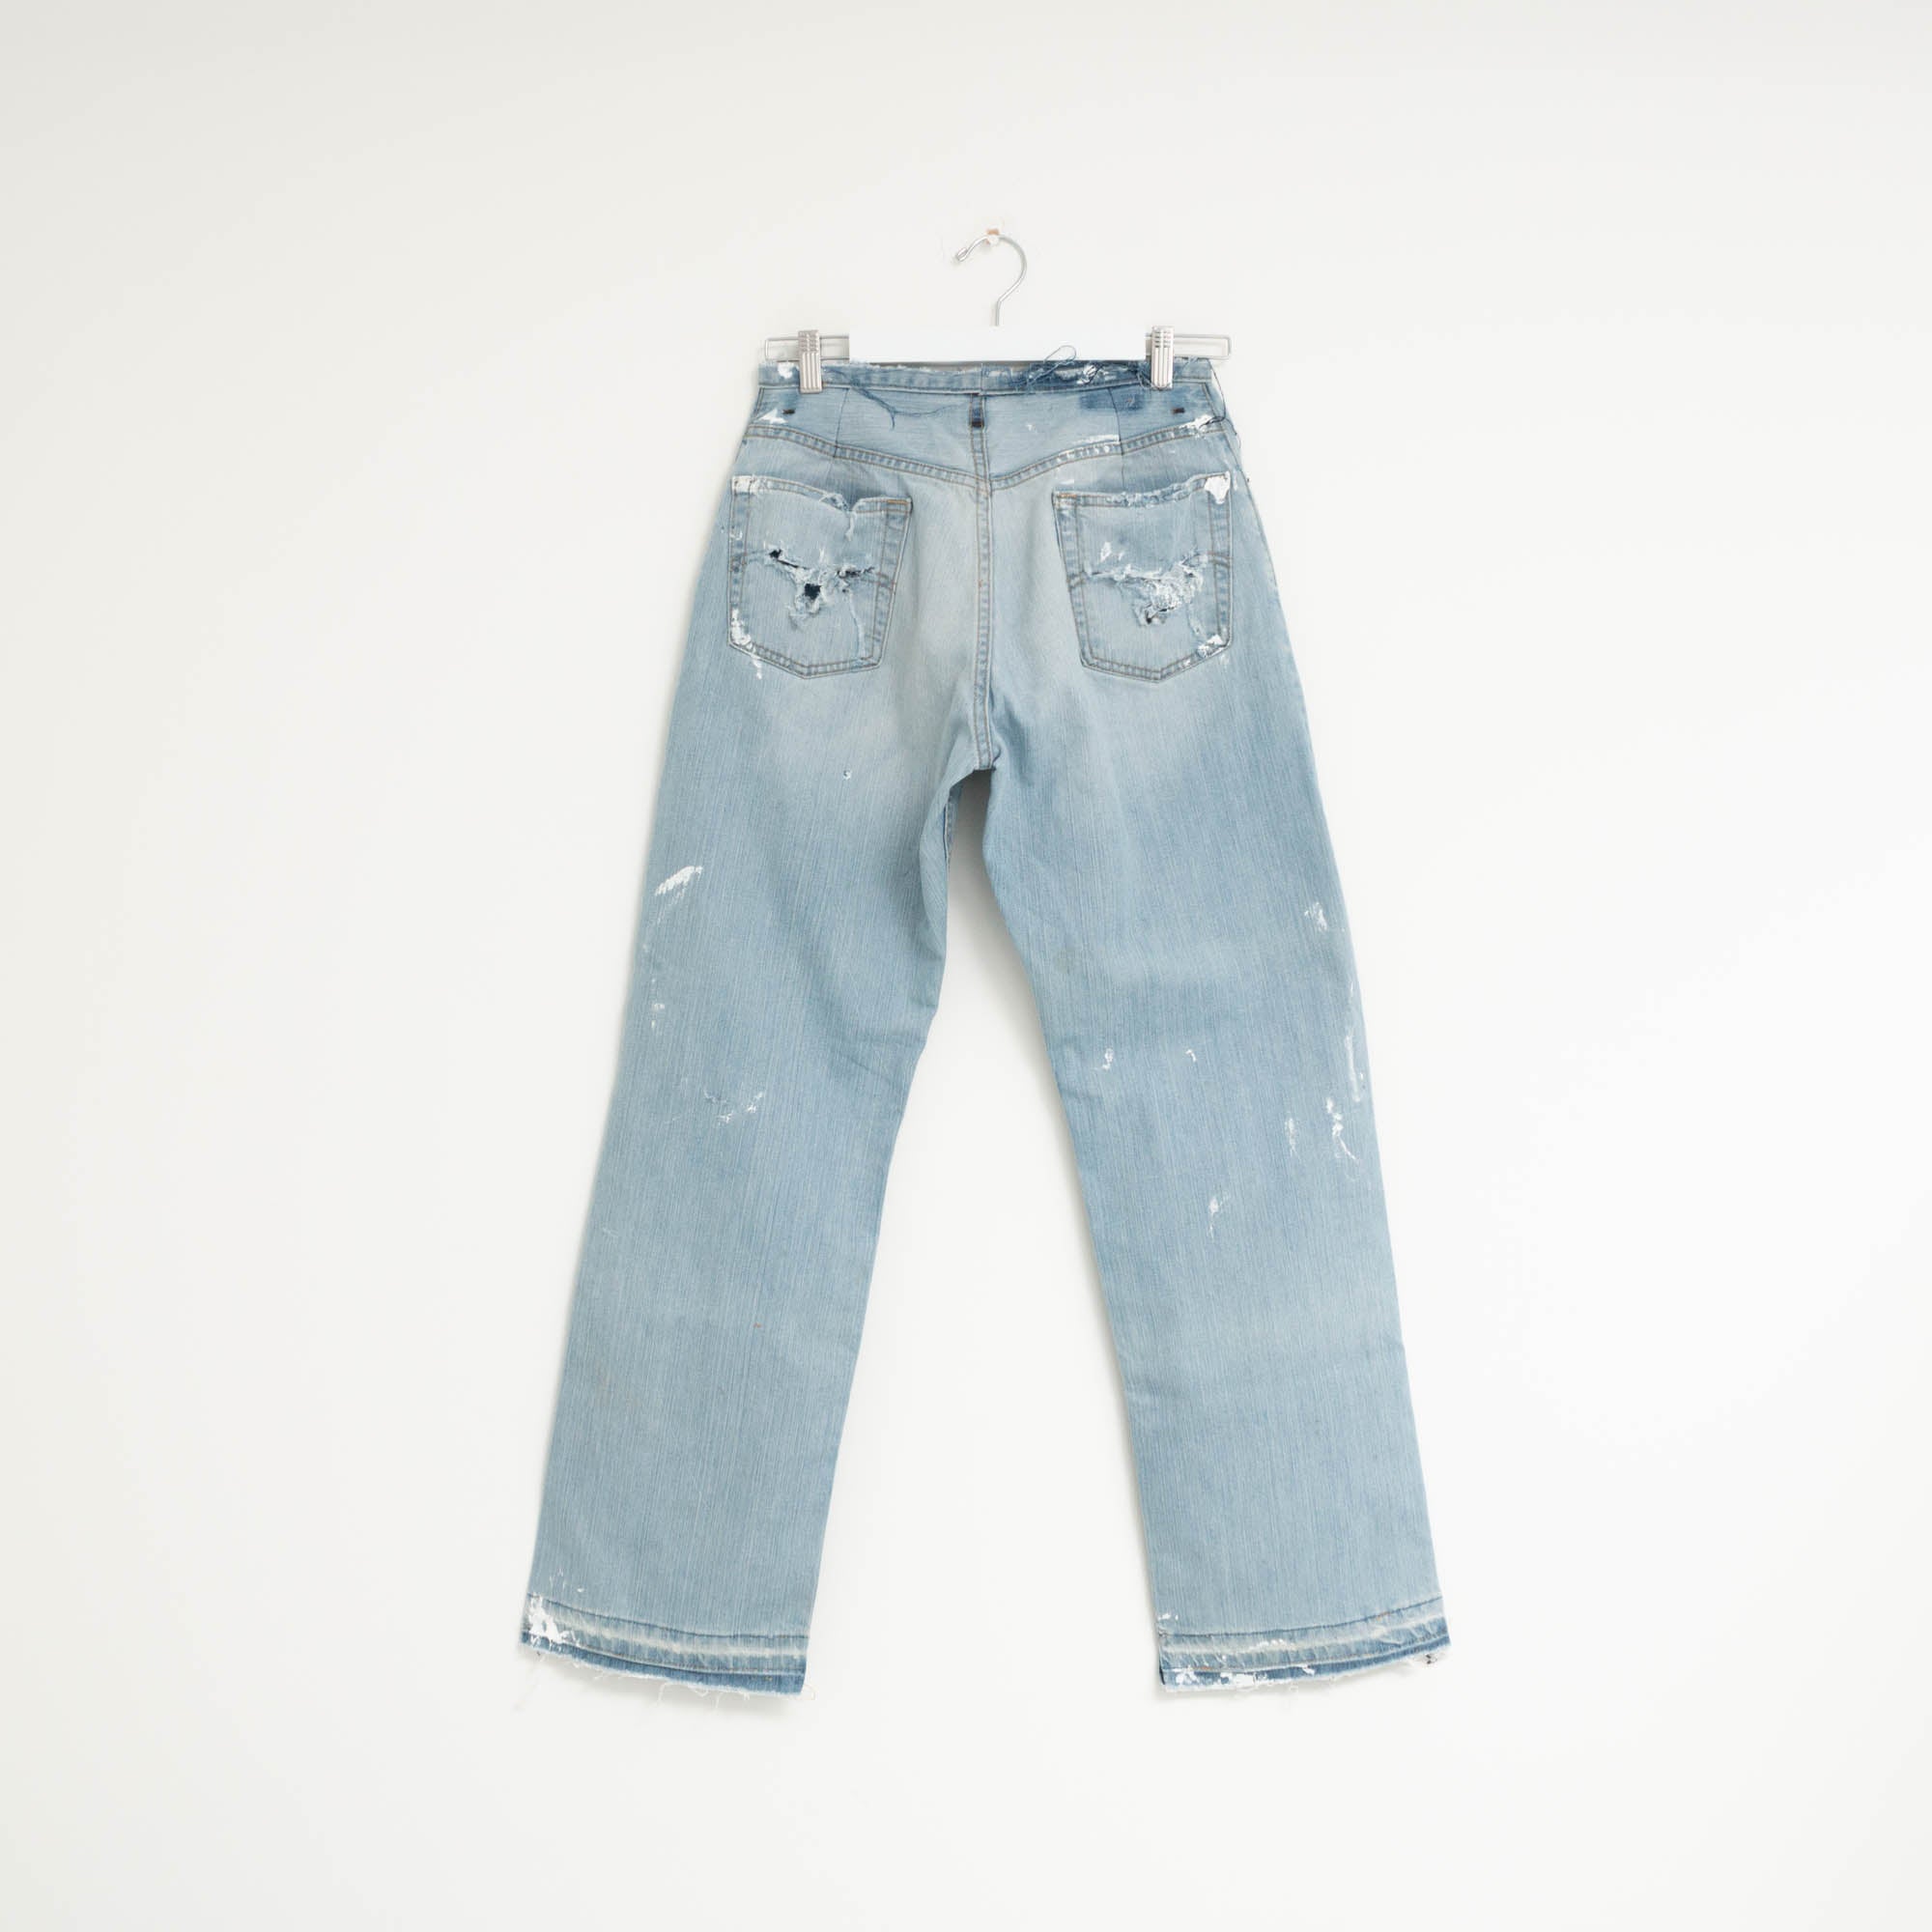 "PAINTER" Jeans W29 L31